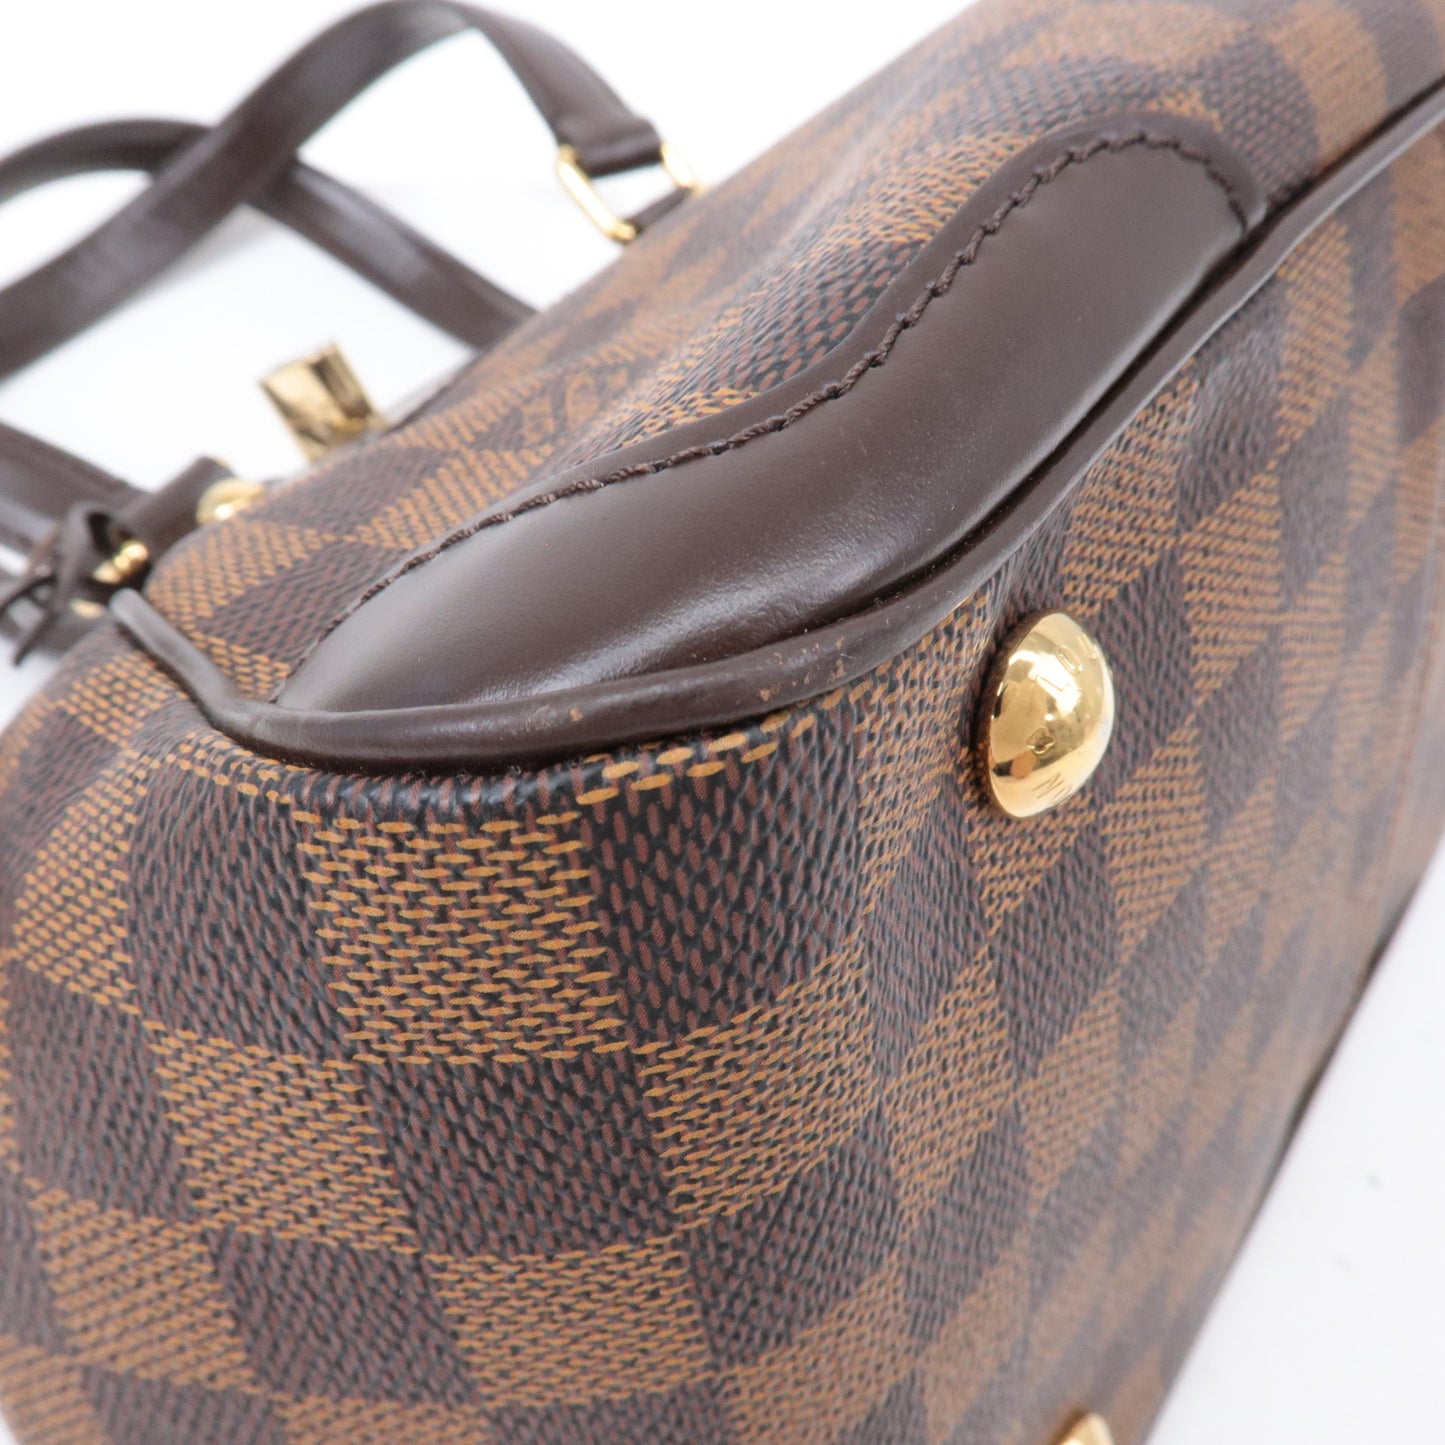 Louis Vuitton Damier Ebene Verona PM Hand Bag Brown N41117